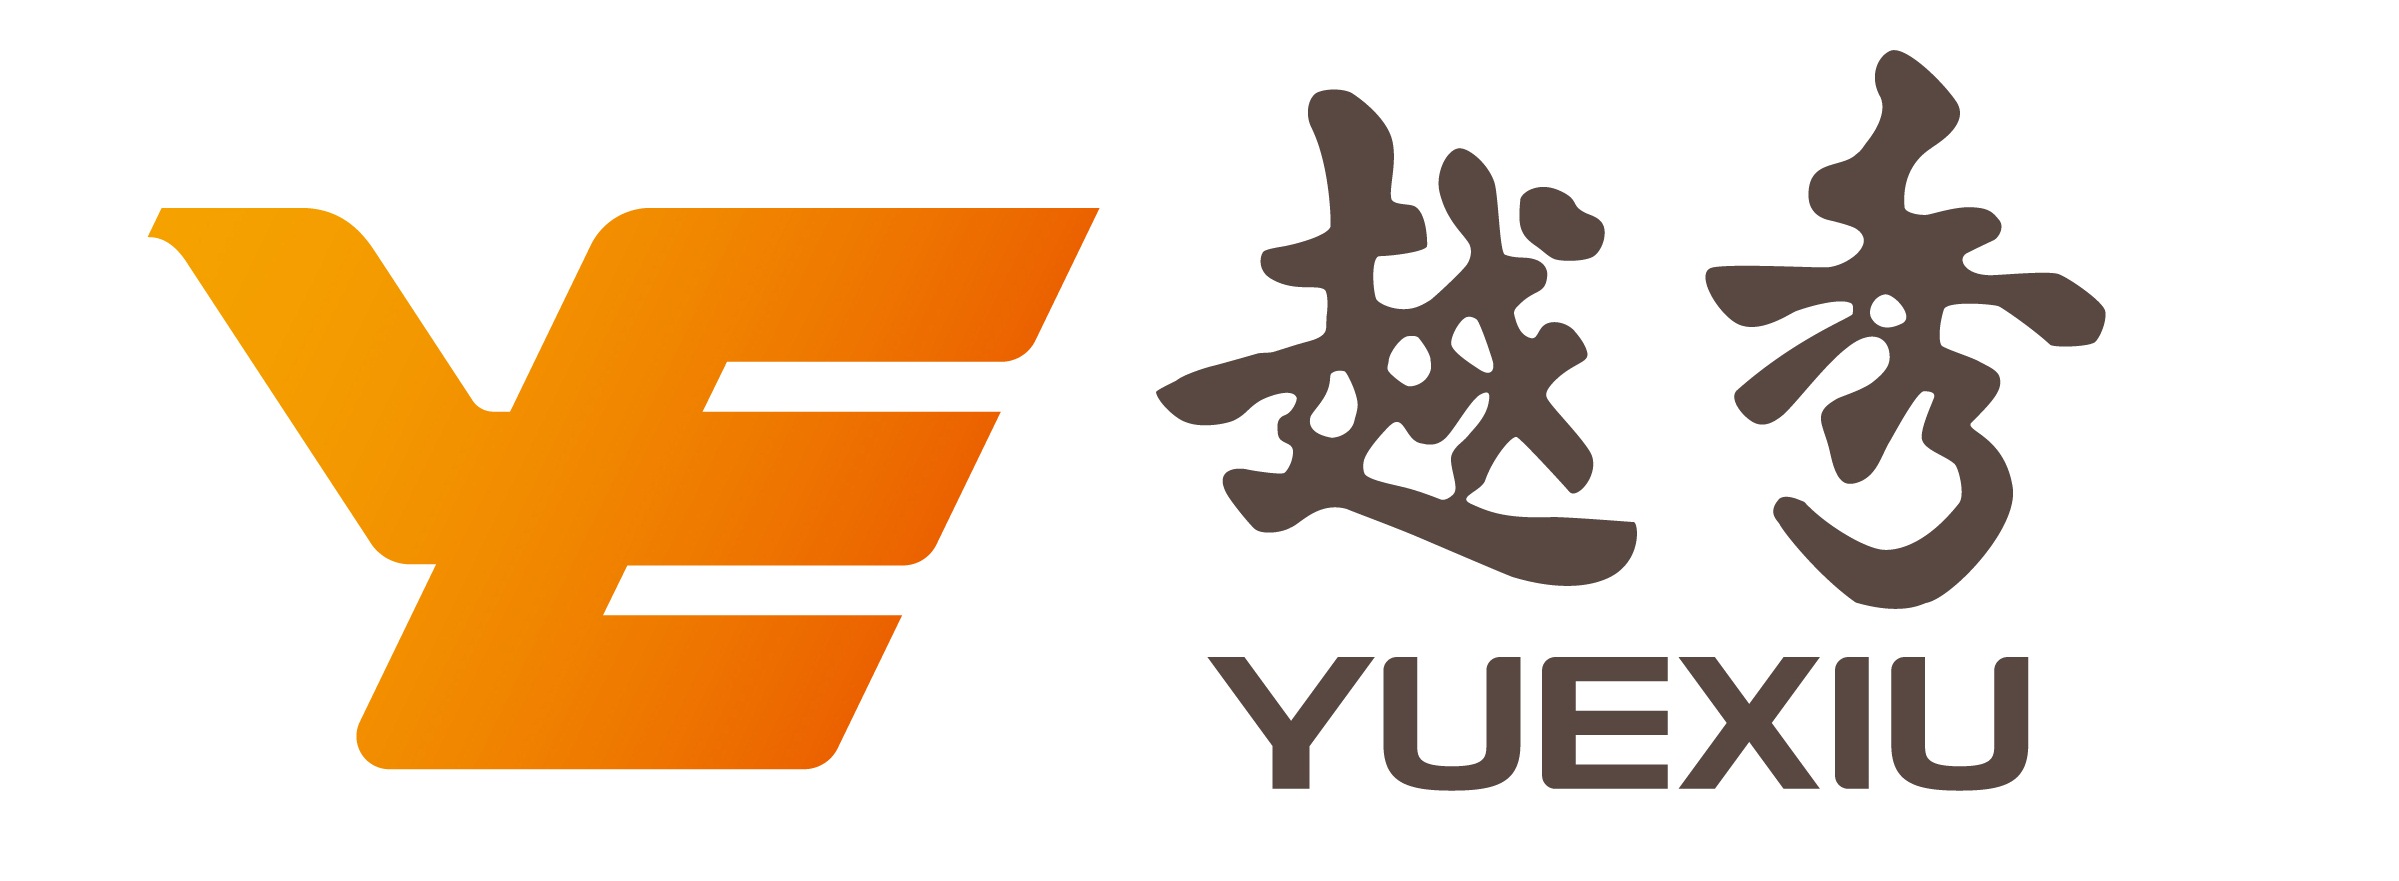 广州越秀集团股份有限公司-logo